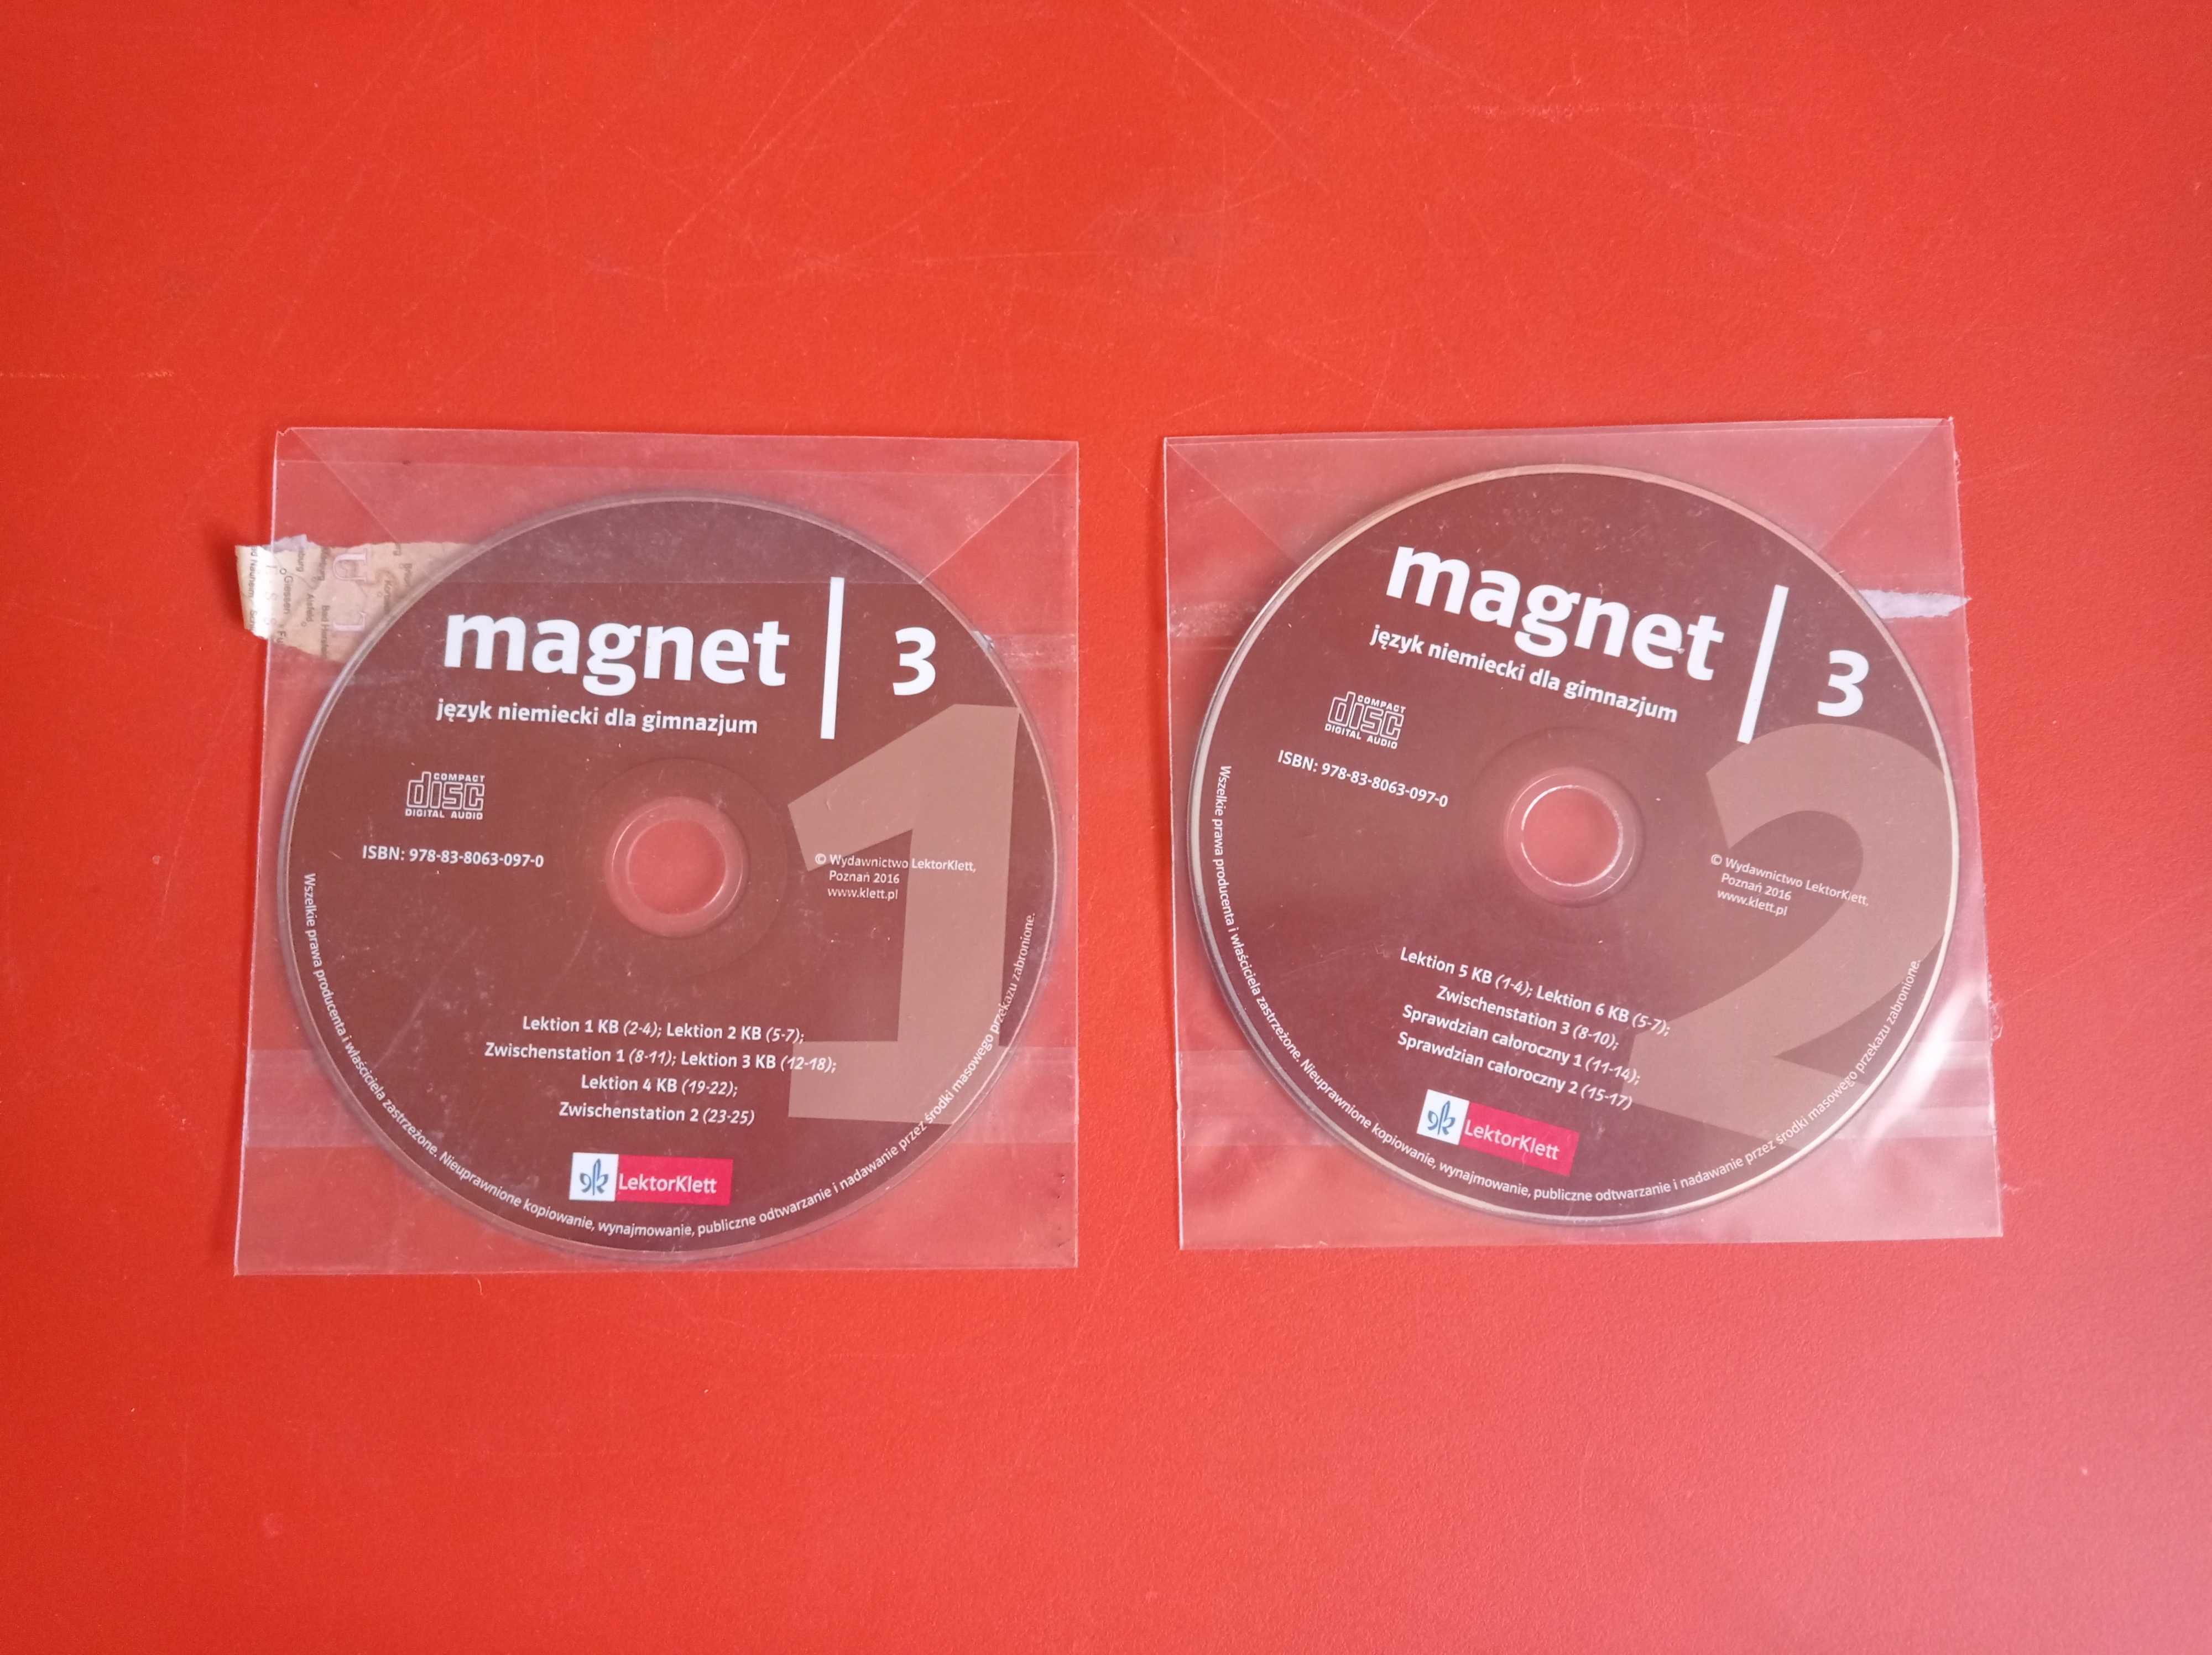 Magnet 3 Język niemiecki, płyta CD, płyta nr 1 i 2